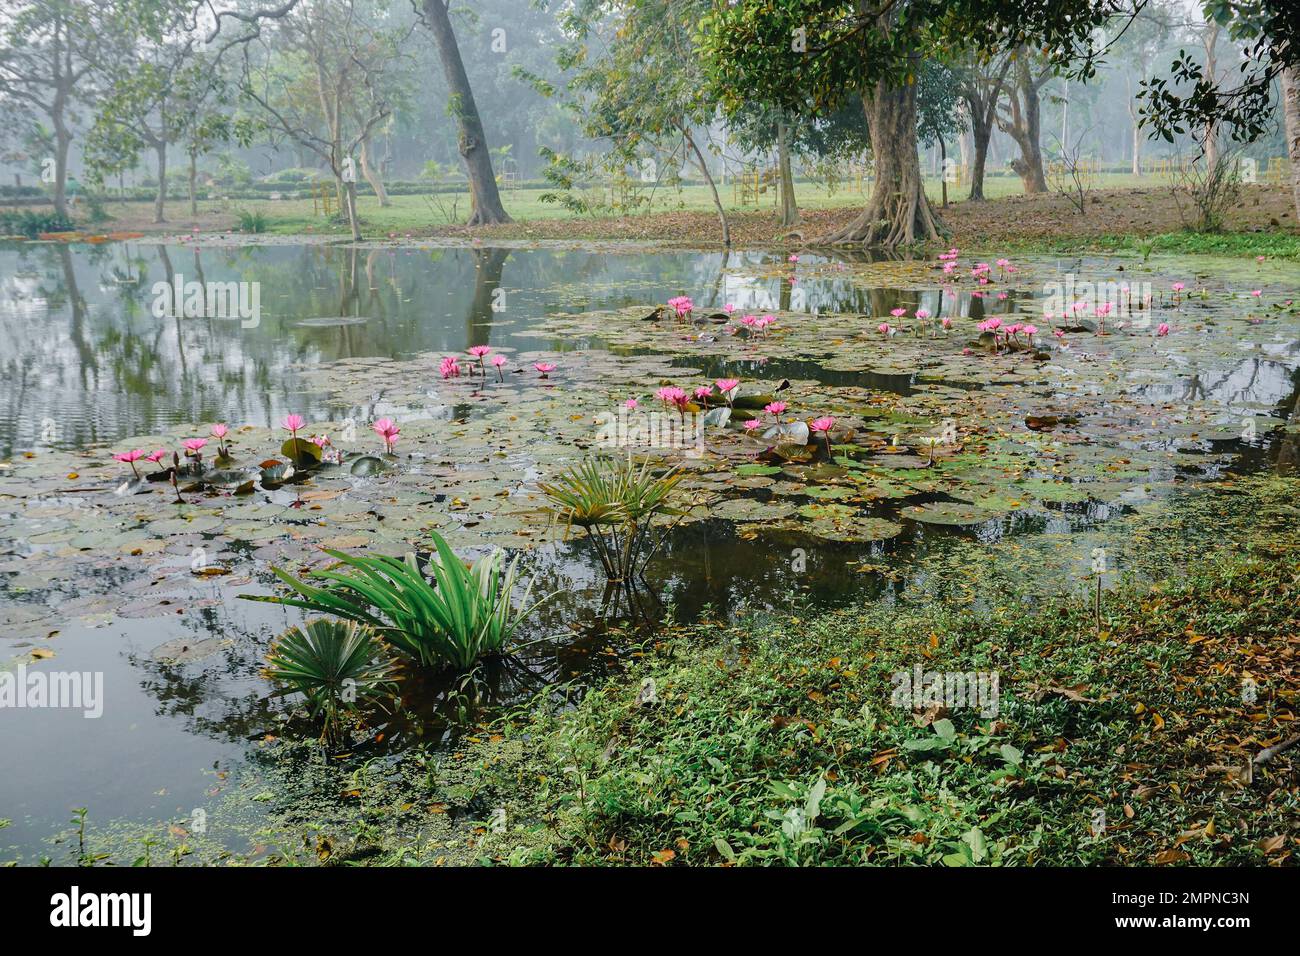 Wunderschöner Blick auf einen Teich voller Blätter von Nymphaea, Wasserpflanzen, allgemein bekannt als Seerosen. Indisches Winterbild. Howrah, W.B., Indien. Stockfoto